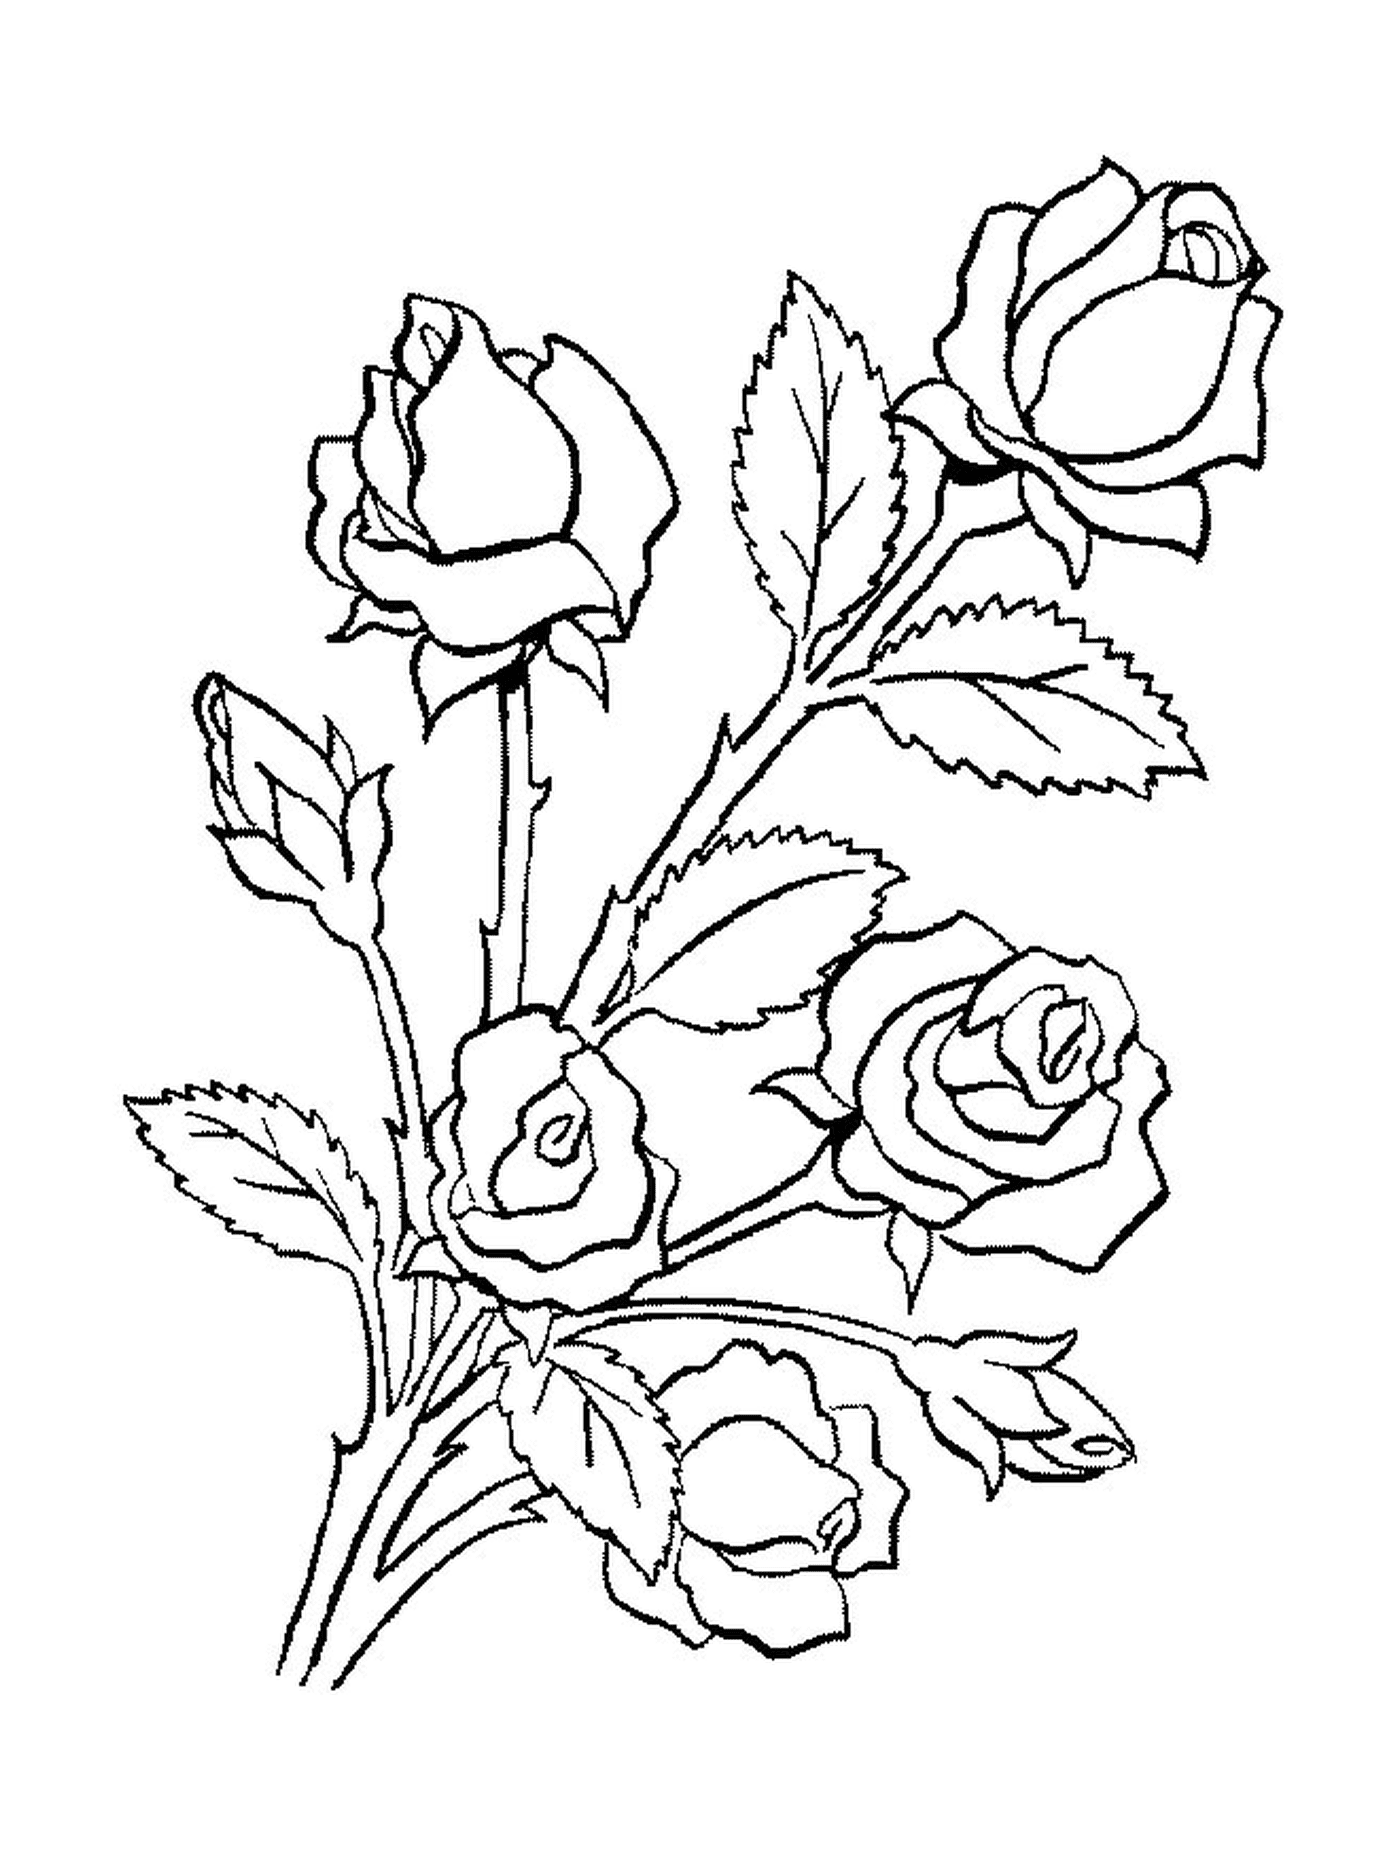  Un bouquet di rose poste a terra 